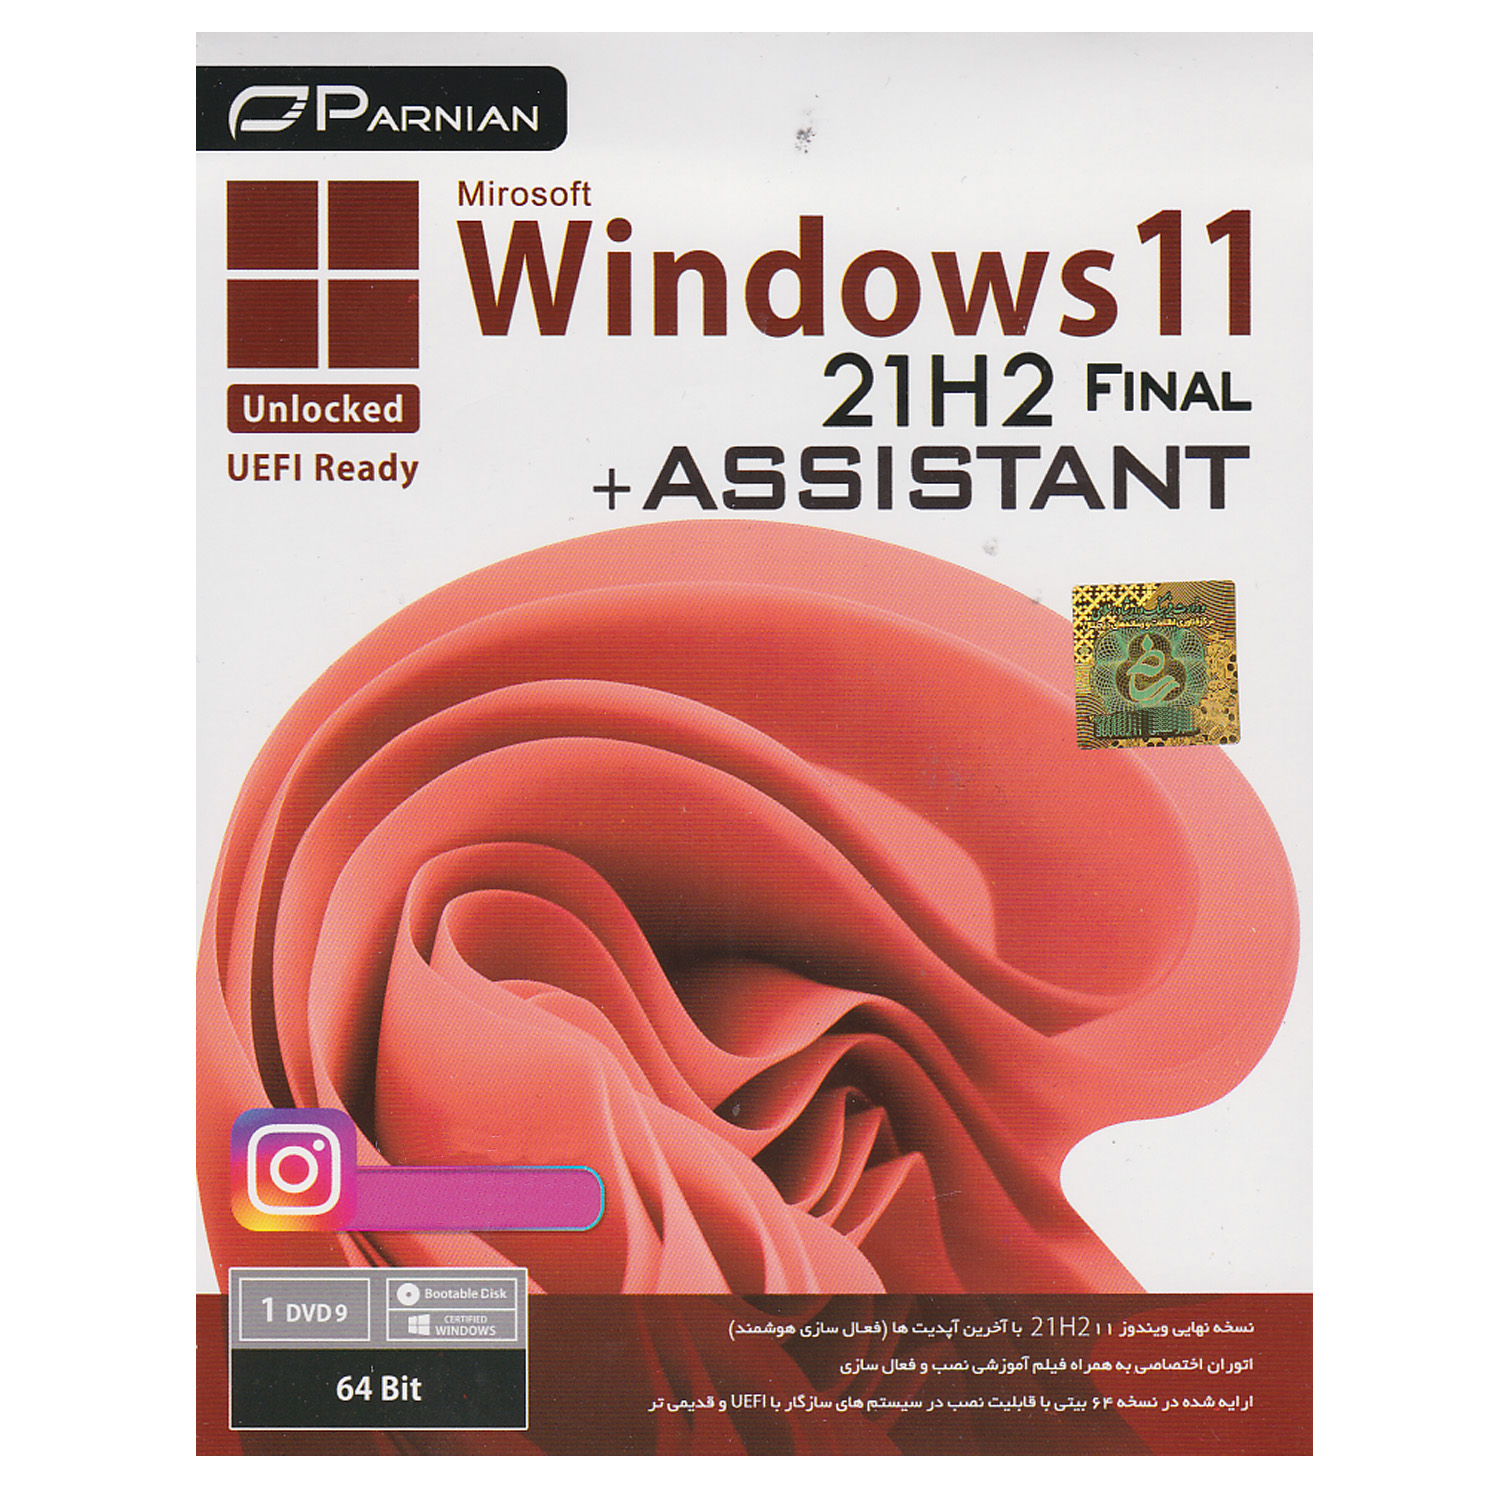 سیستم عامل Windows 11 21H2  Final Unlocked + Assistant نشر پرنیان